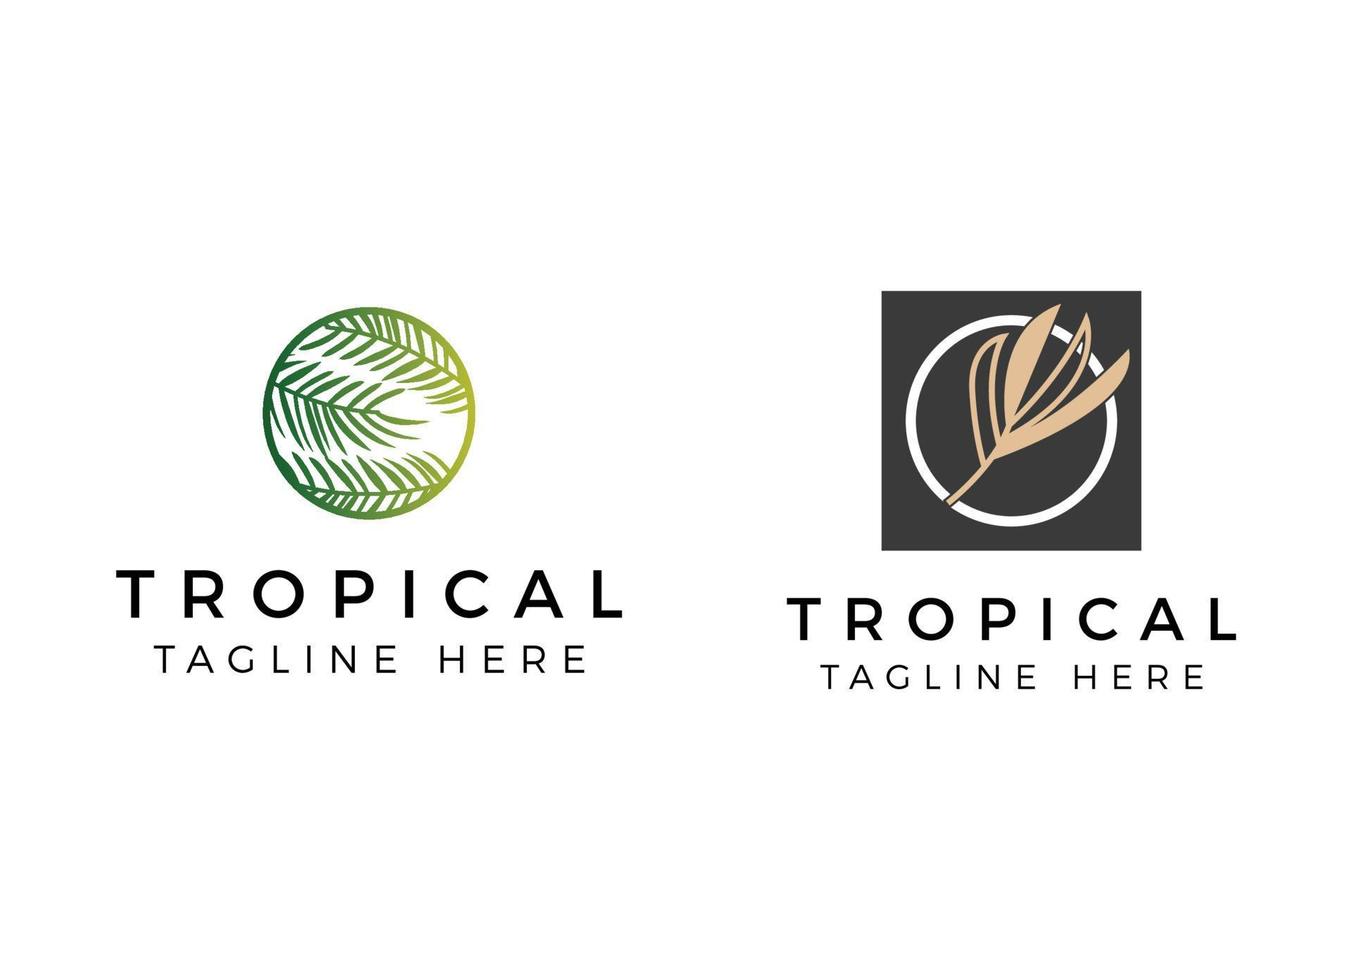 plantilla de diseño de logotipo de hoja tropical exótica y lujosa. vector